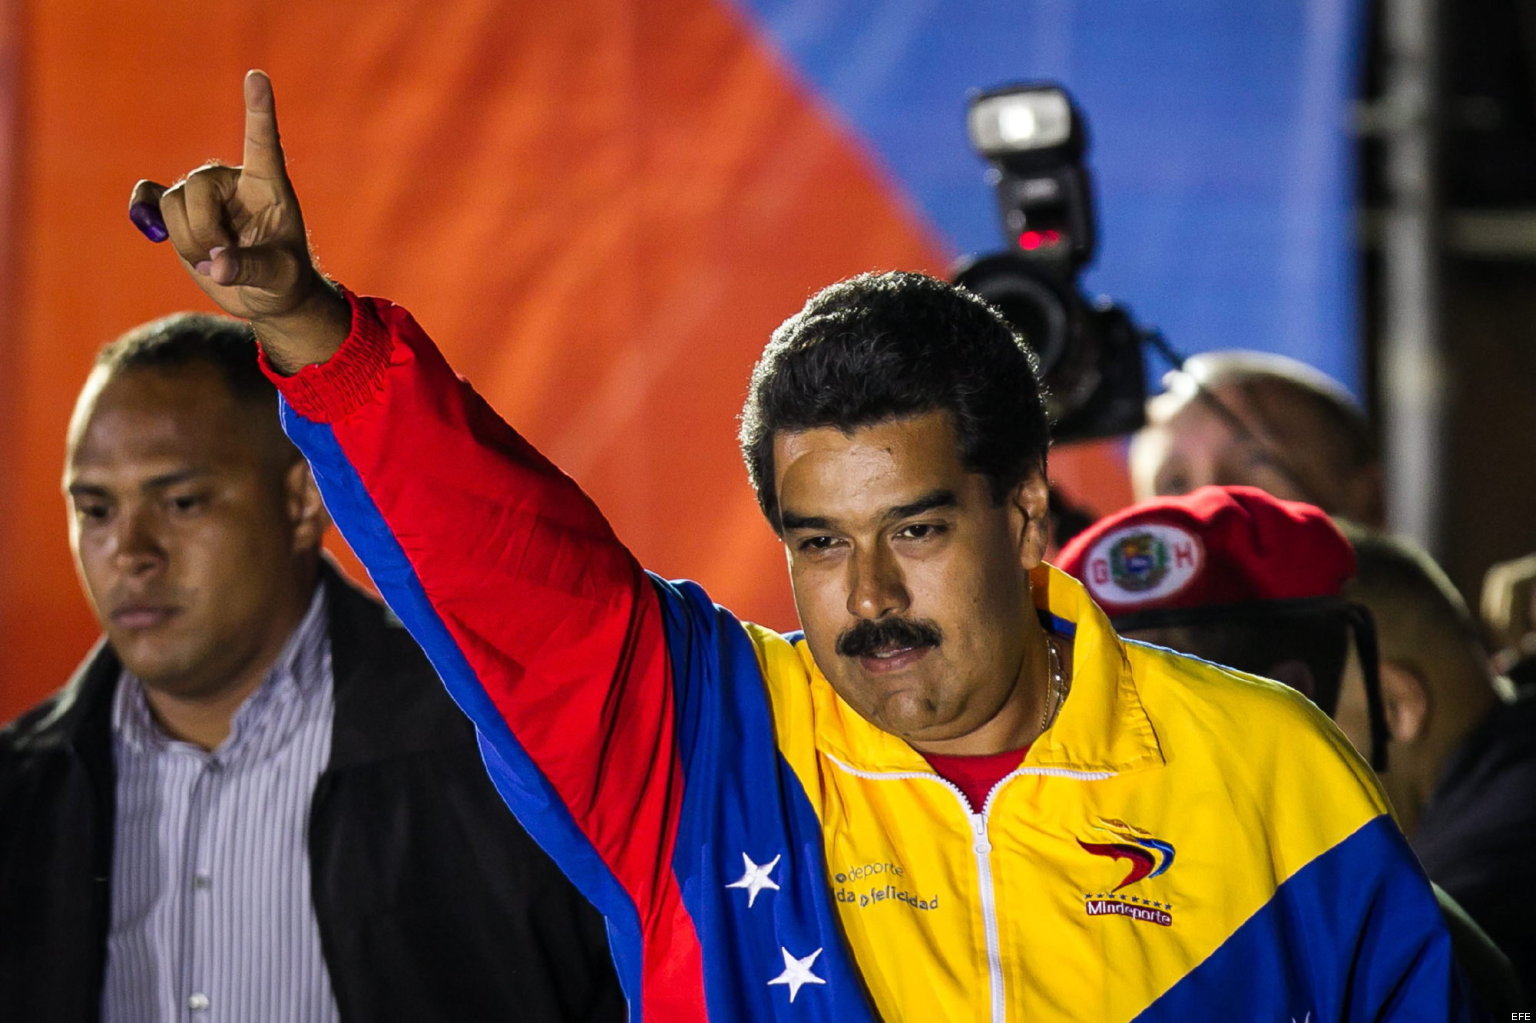  Nicolás Maduro se aferra al poder; podría evitar revocatorio